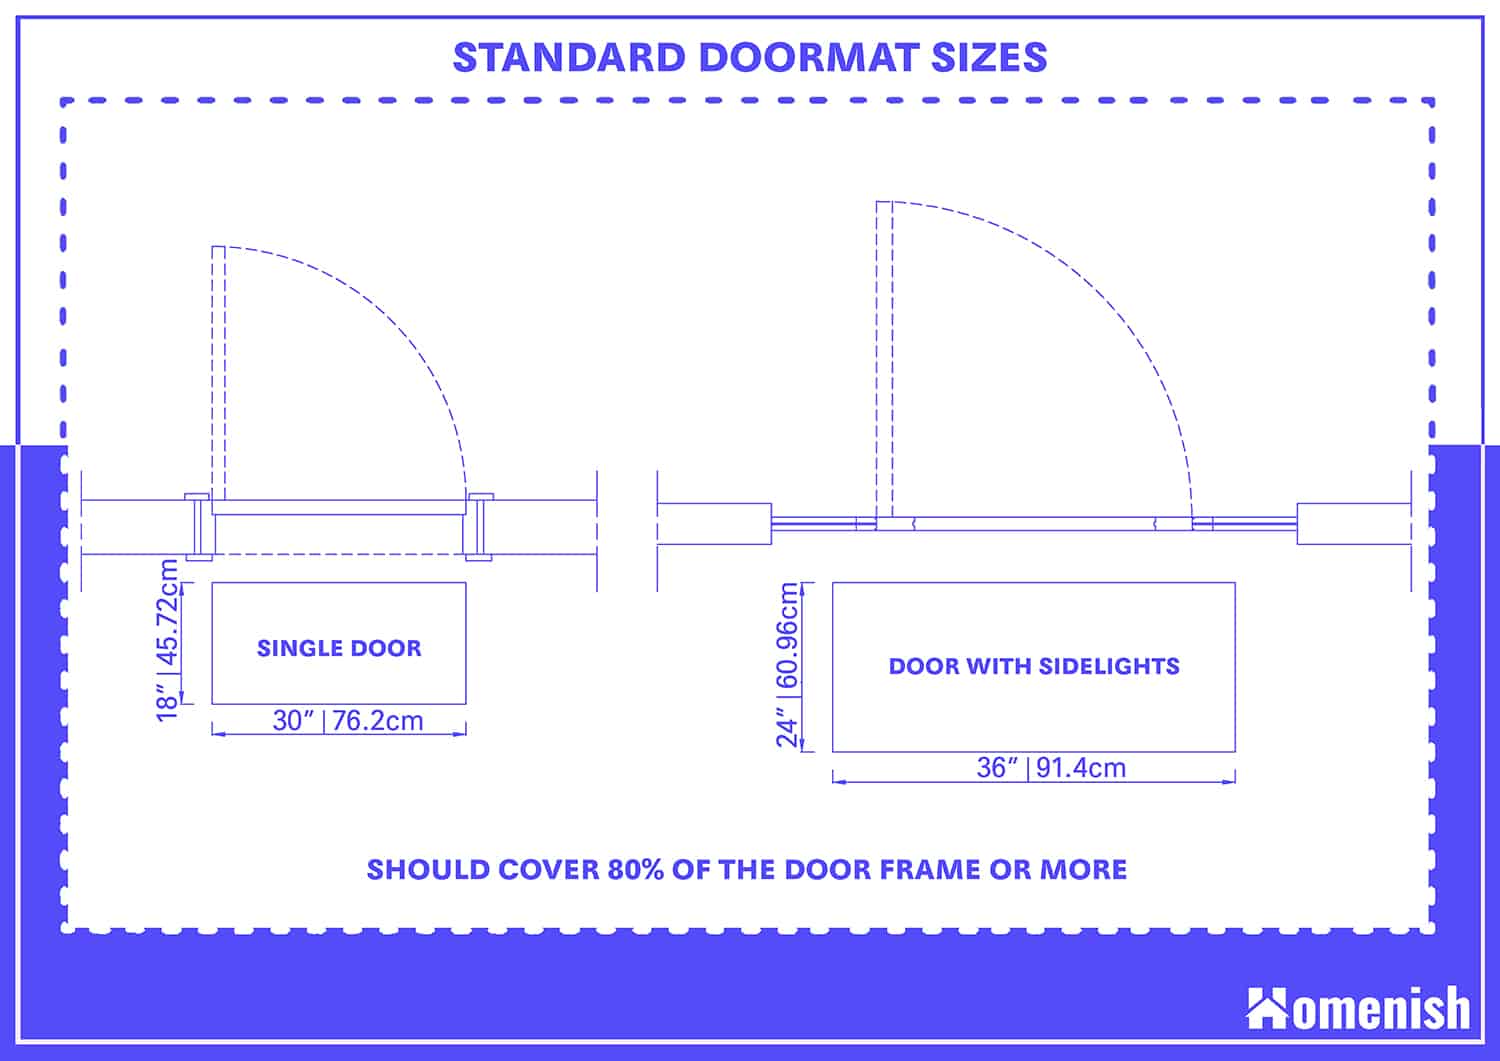 Standard Doormat Sizes